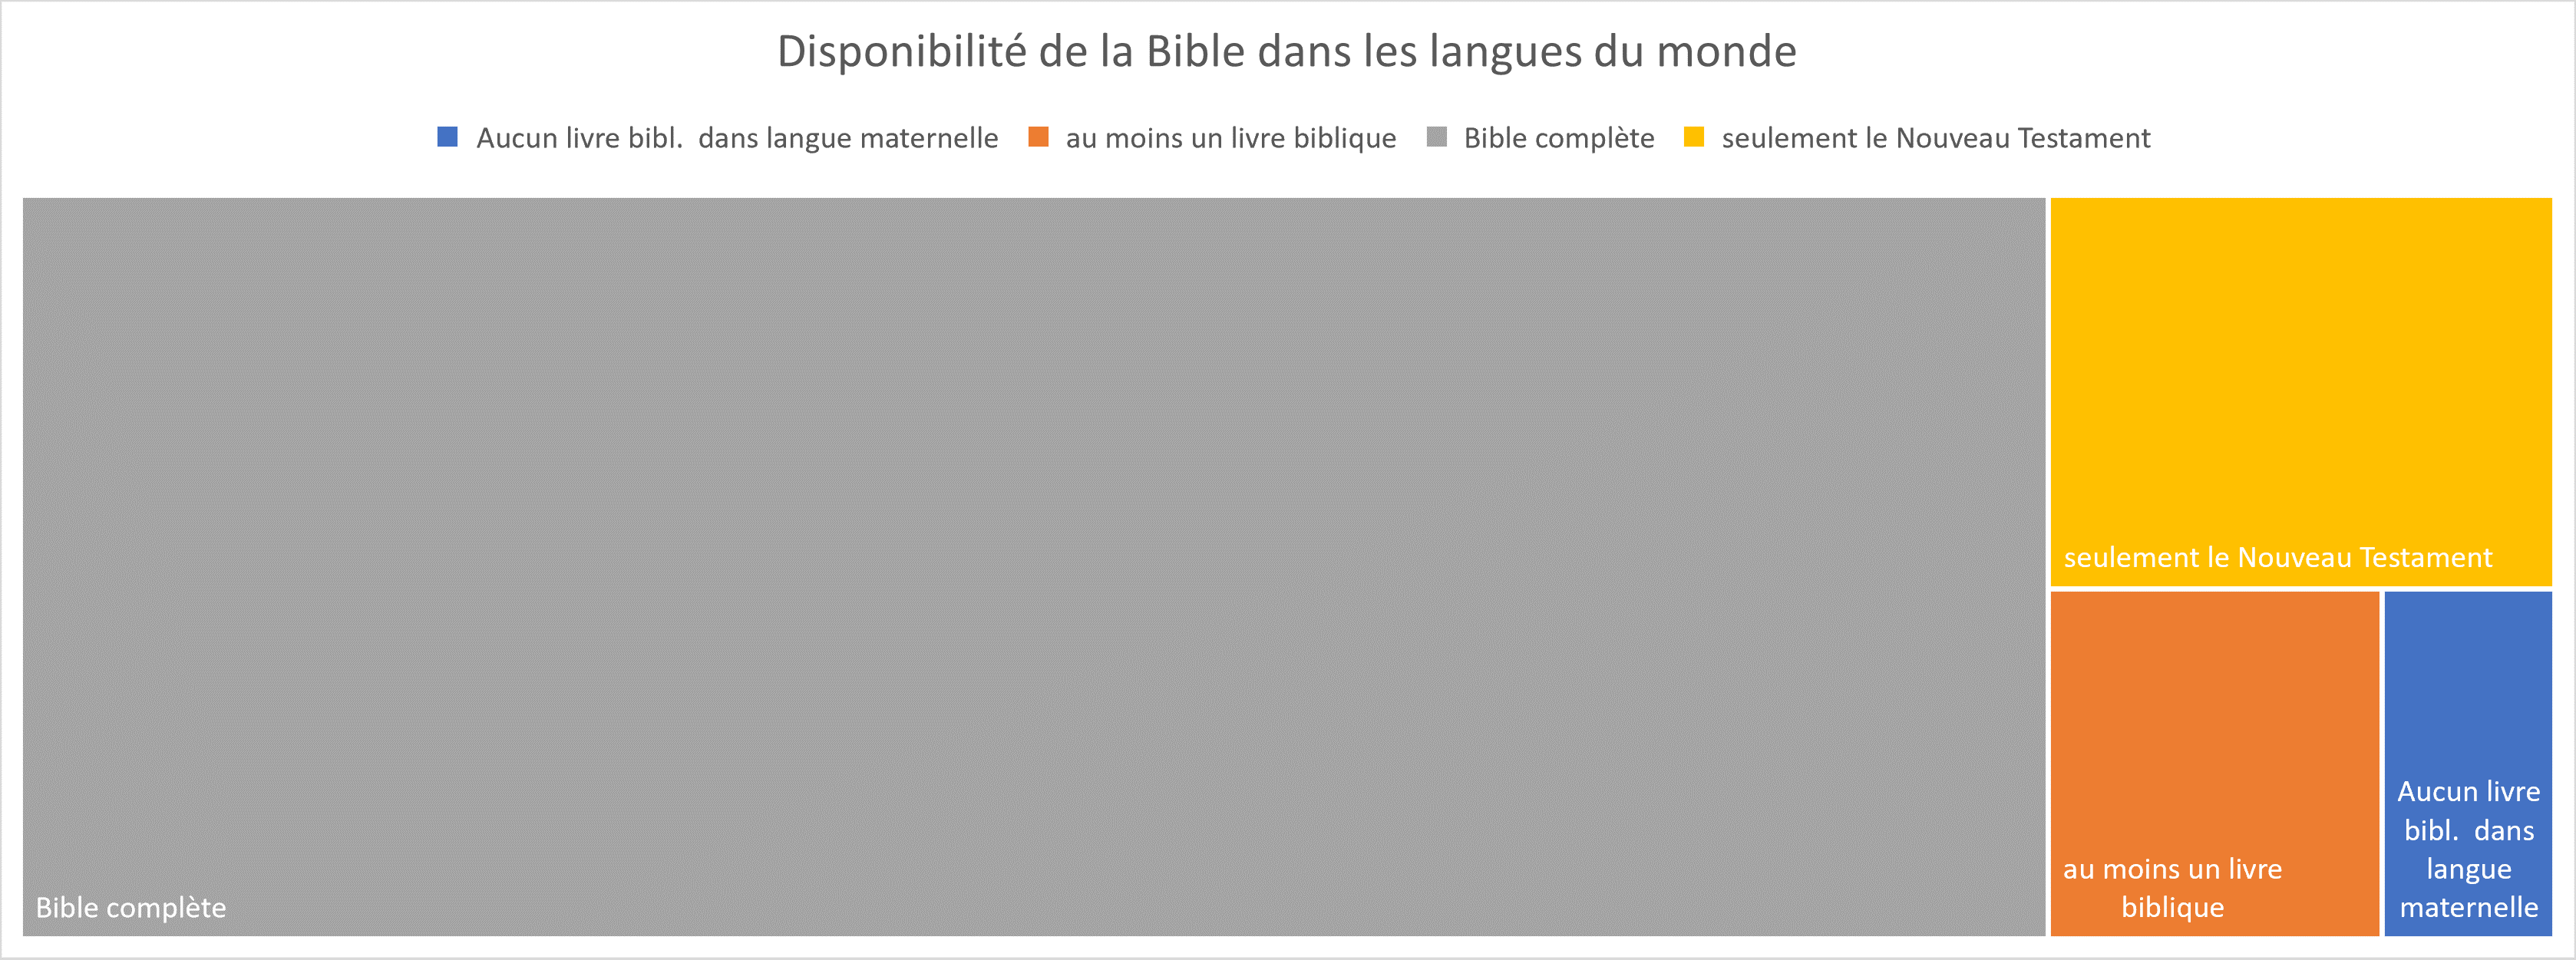 Dispnibilite bible dans langues du monde